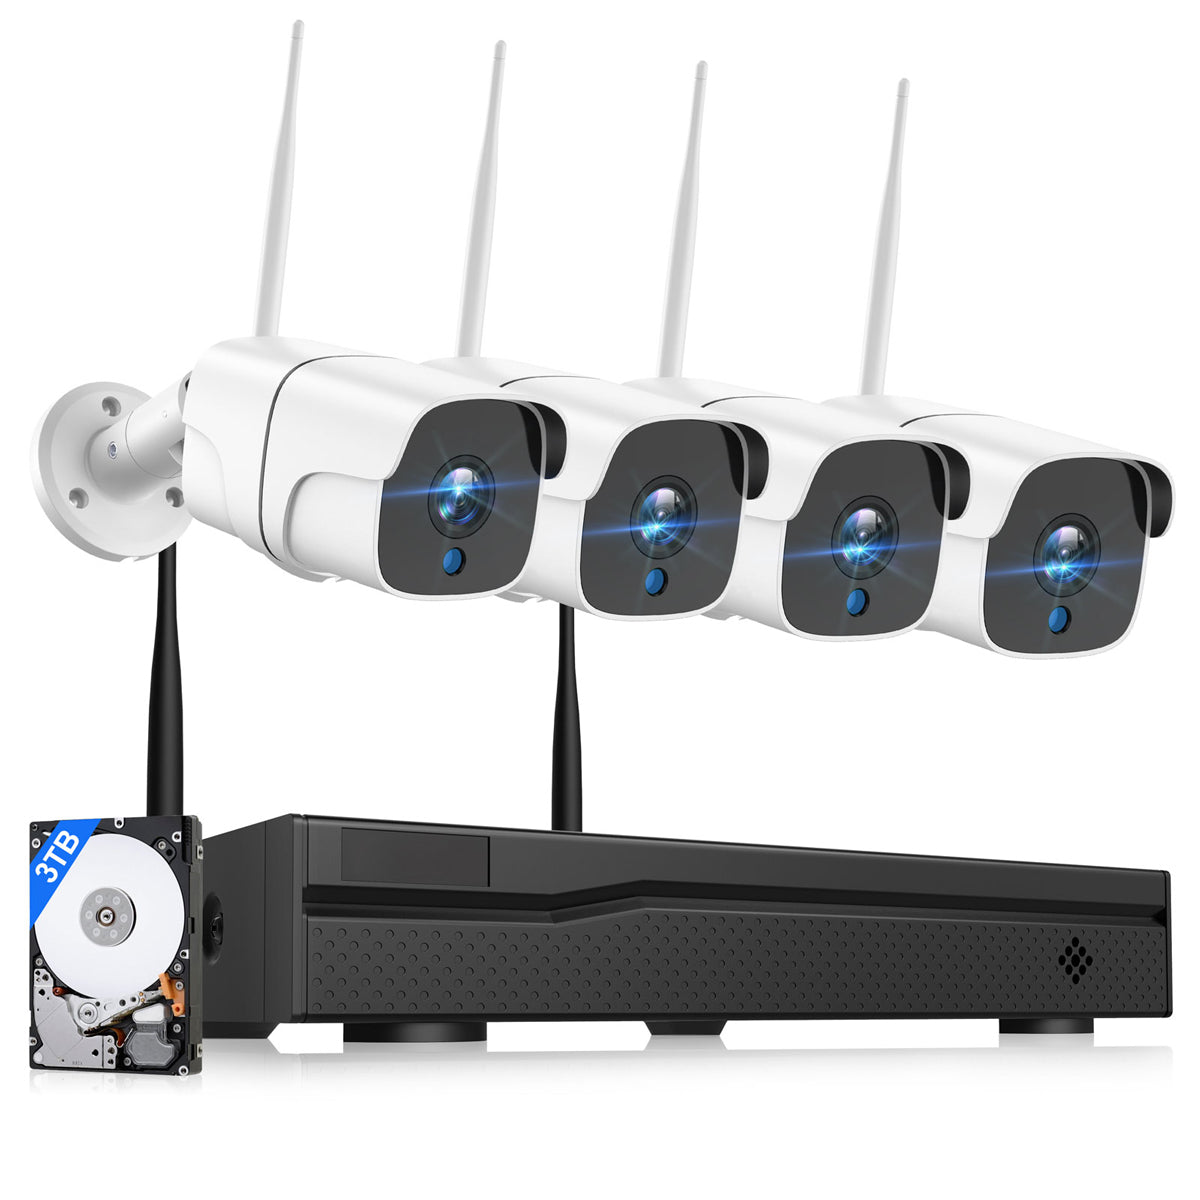 Überwachungskamera online kaufen, Toguard W300 Überwachungskamera